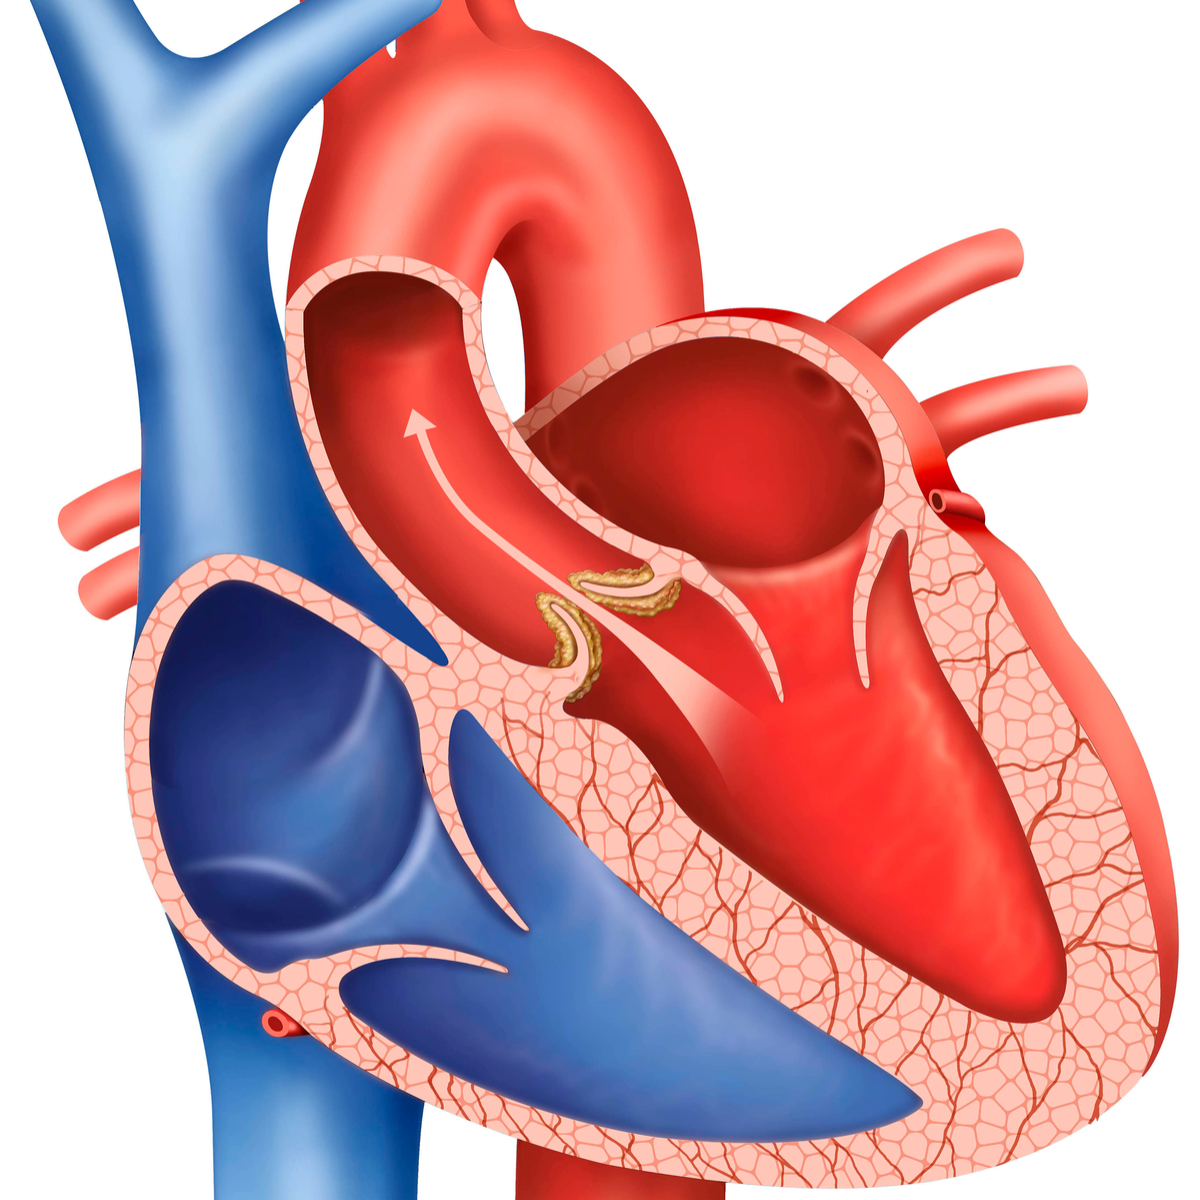 Featured image for “Cum se tratează stenoza aortică”